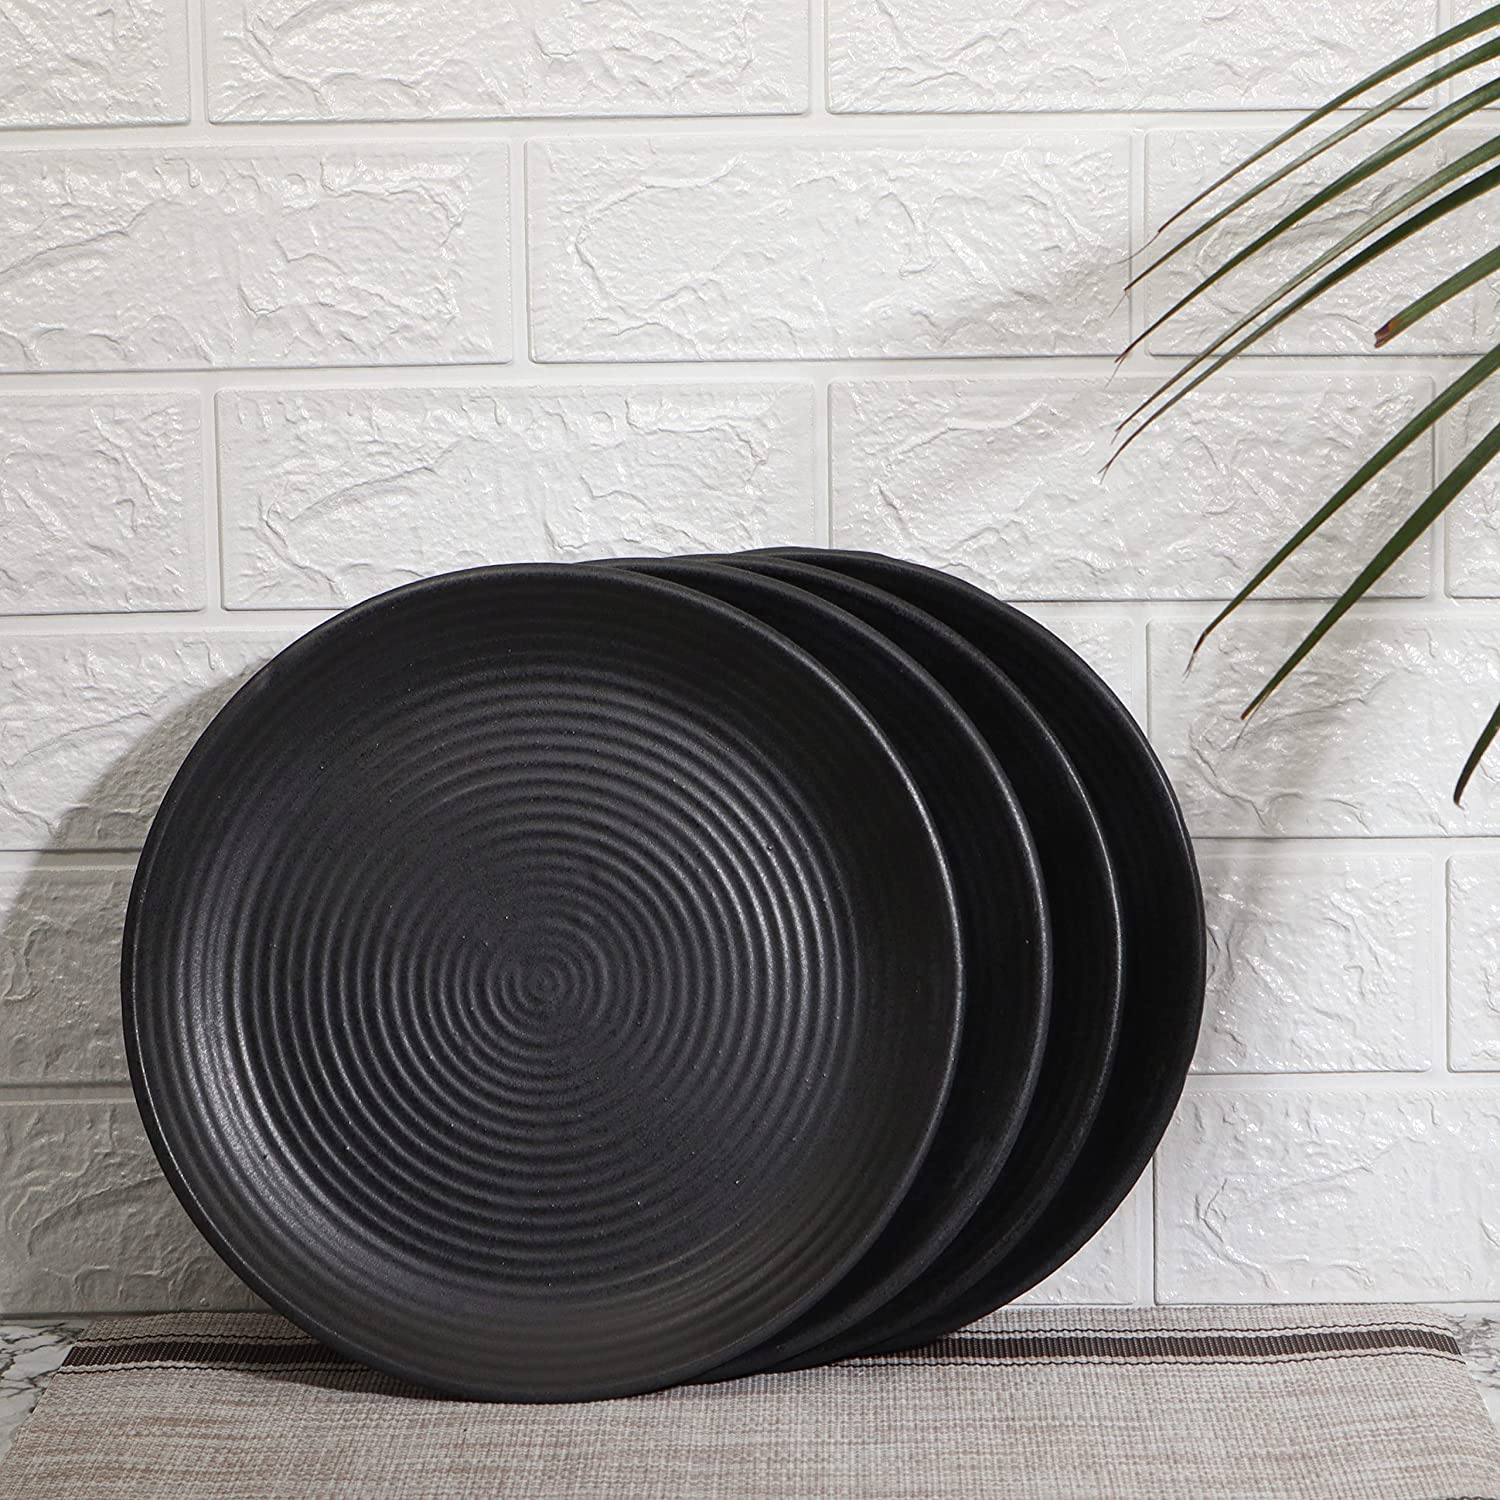 Handmade Solid Ceramic Dining Plate, 10 In, Black (Set of 4, Dishwasher Safe)